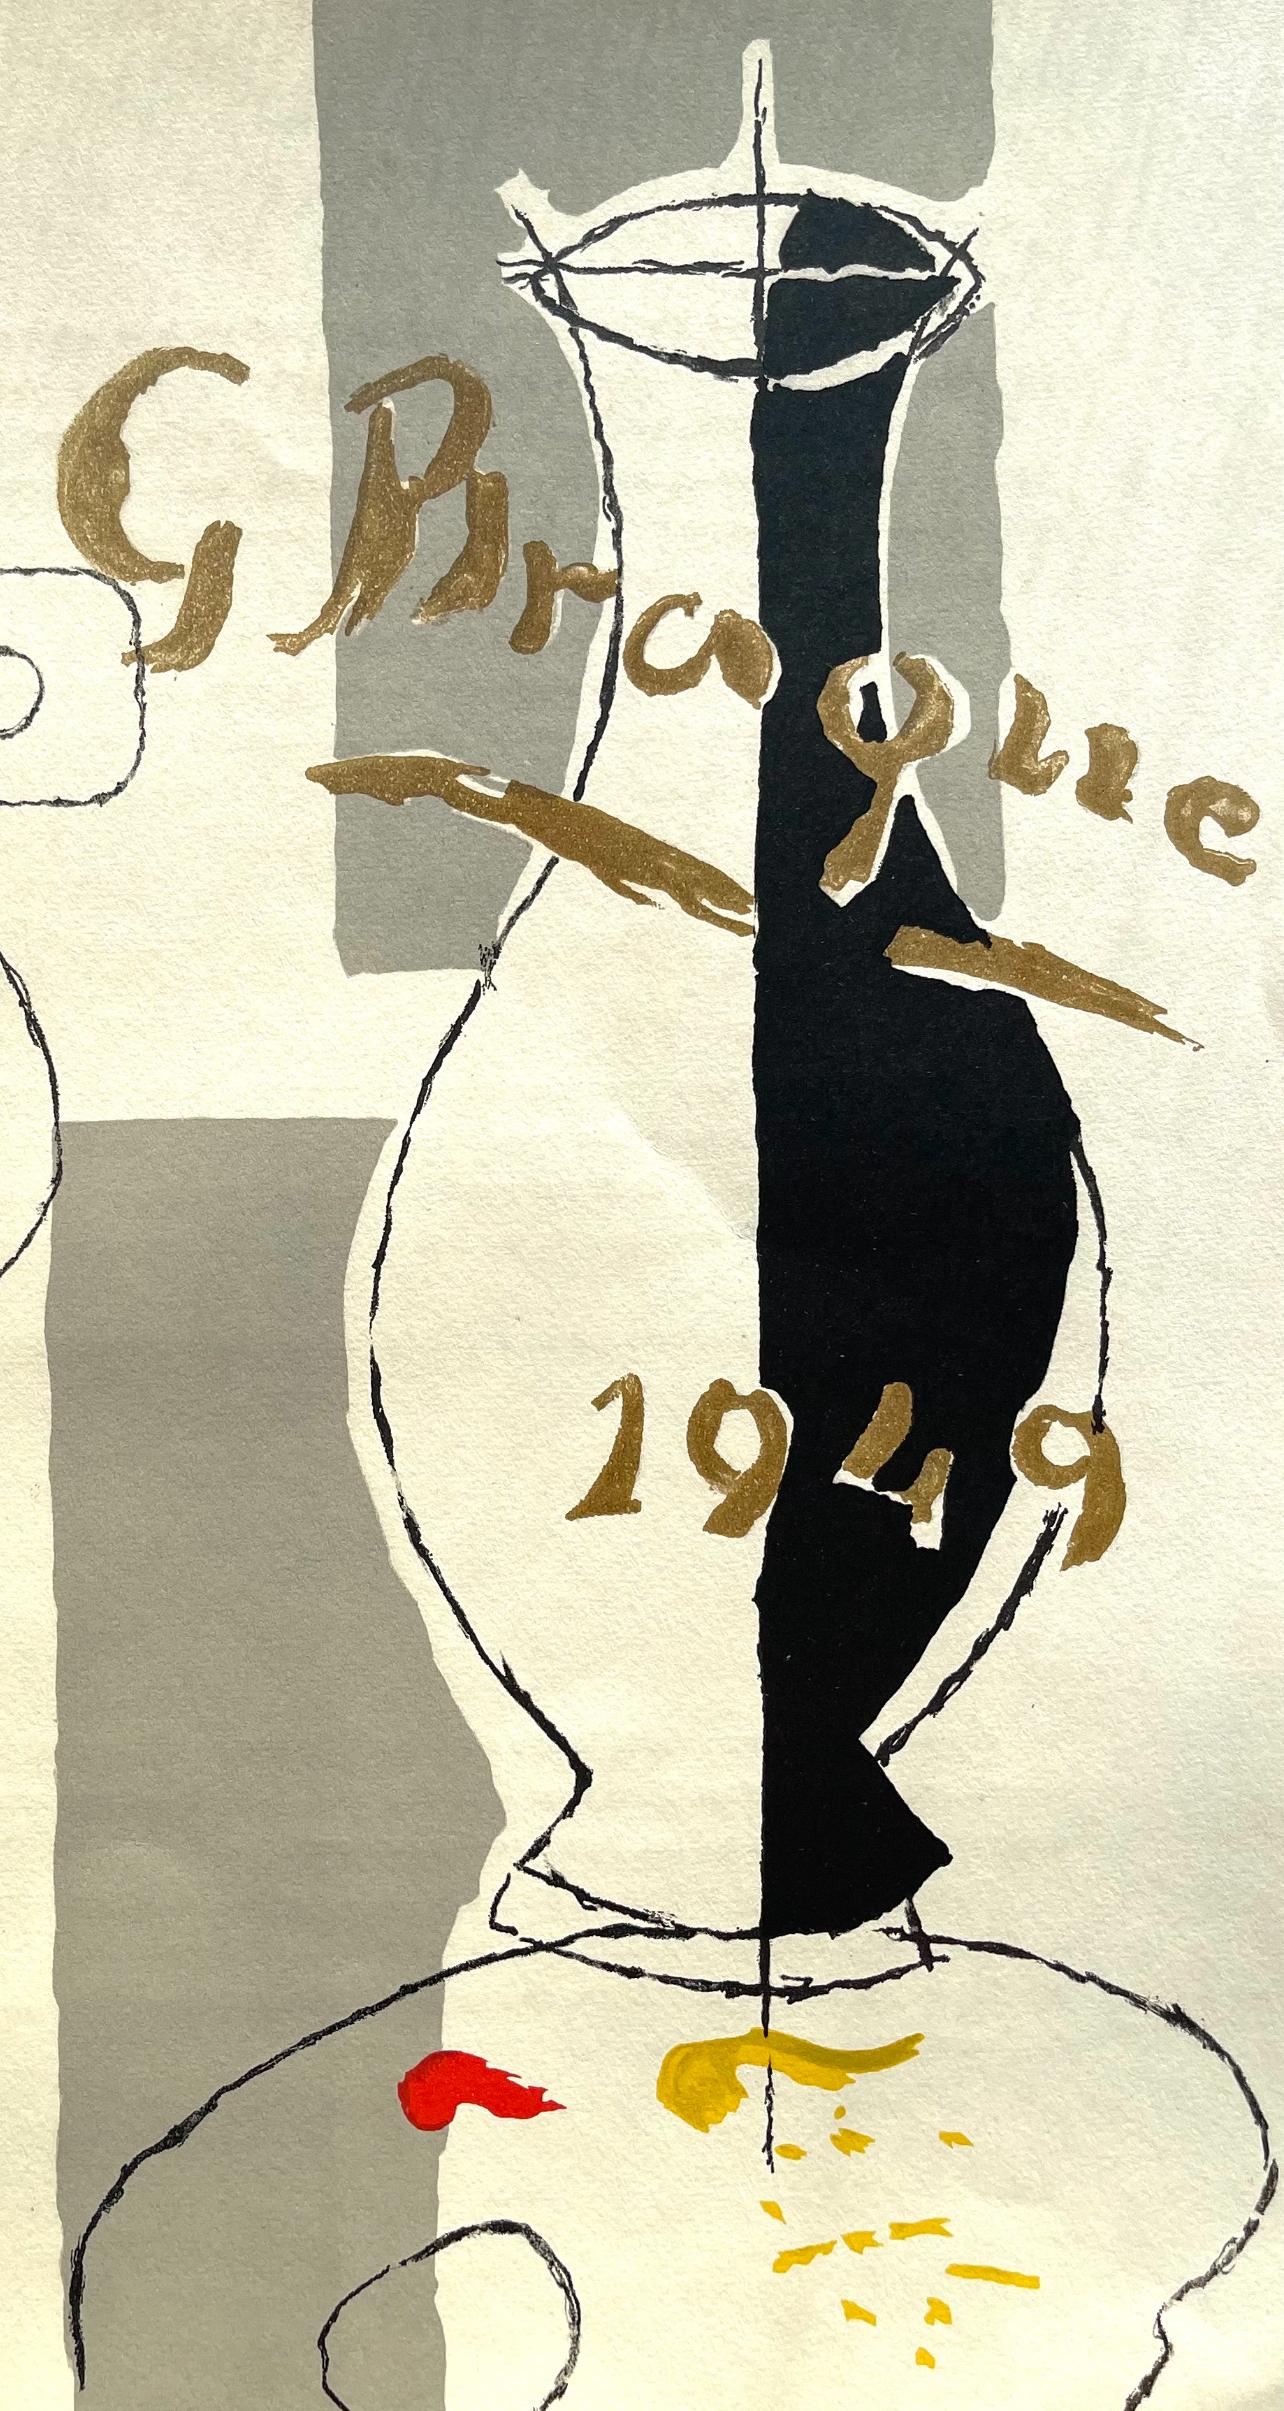 Braque, Composition, Derrière le miroir (after) - Print by Georges Braque